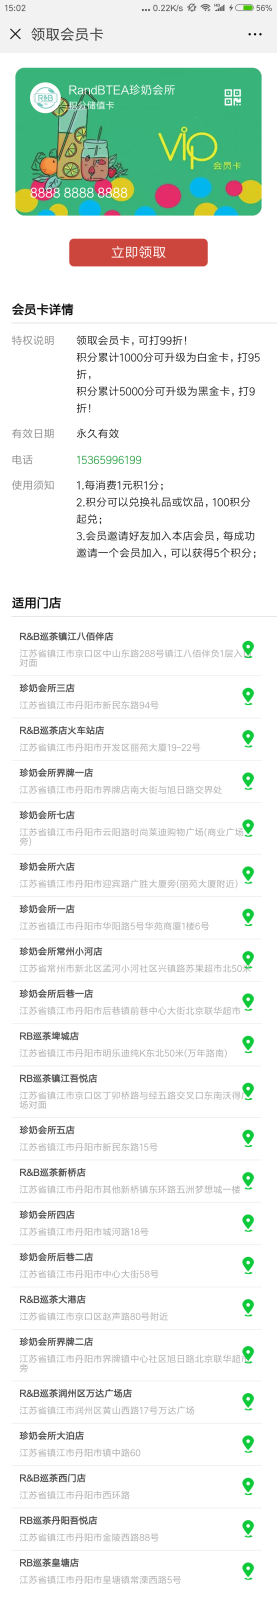 Screenshot_2018-08-28-15-02-36-549_com.tencent.mm.png